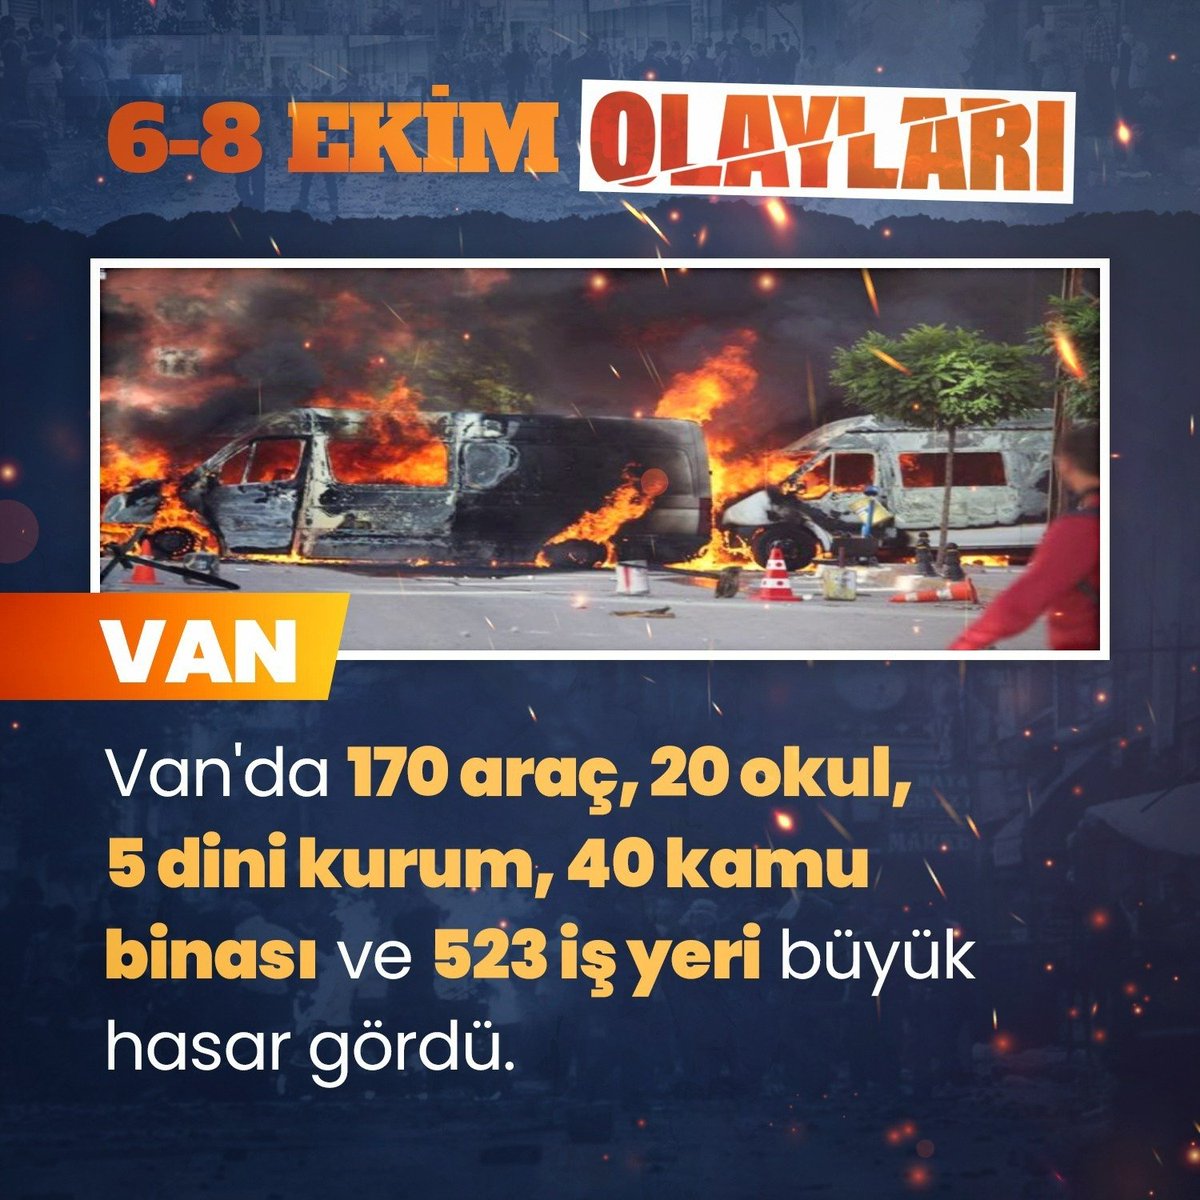 ..Unutmadık! 6 - 8 Ekim Olayları'nda (#Kobani Terör Kalkışması) terör örgütü elebaşlarının sokak çağrıları üzerine #Van'da; 170 araç, 20 okul, 5 dini kurum, 40 kamu binası ve 523 iş yeri büyük hasar görmüştü.+